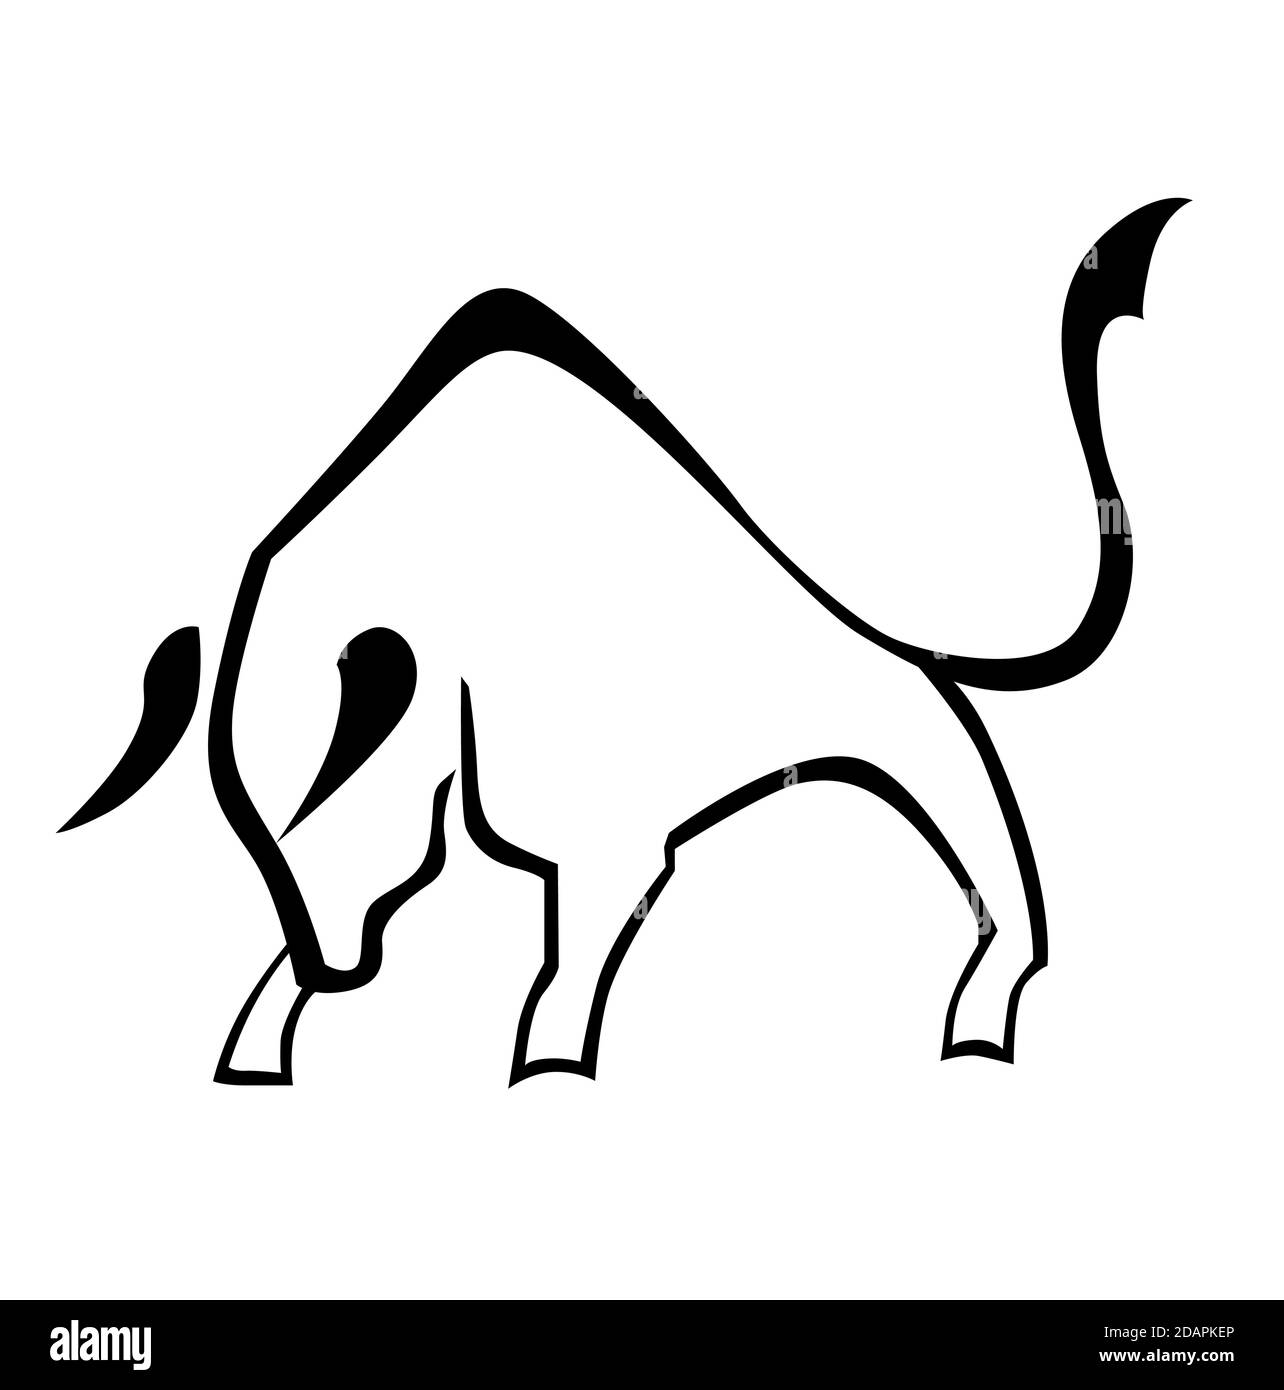 Icona arrabbiata in stile lineare. Logo bianco e nero di un toro arrabbiato. Illustrazione Vettoriale